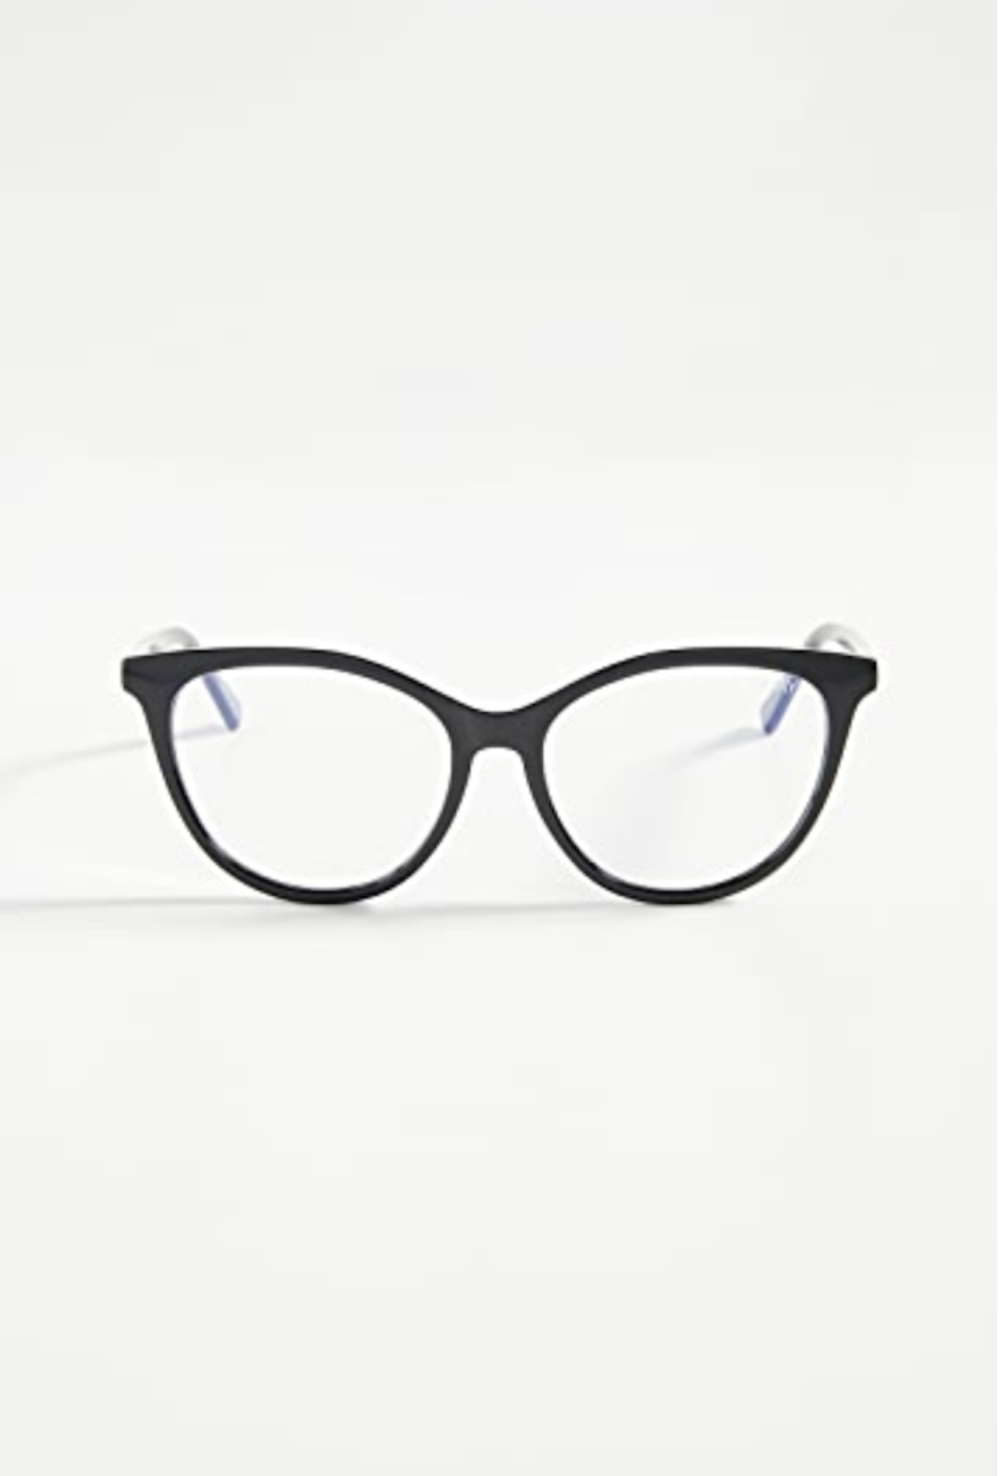 best-blue-light-glasses-to-prevent-eye-strain